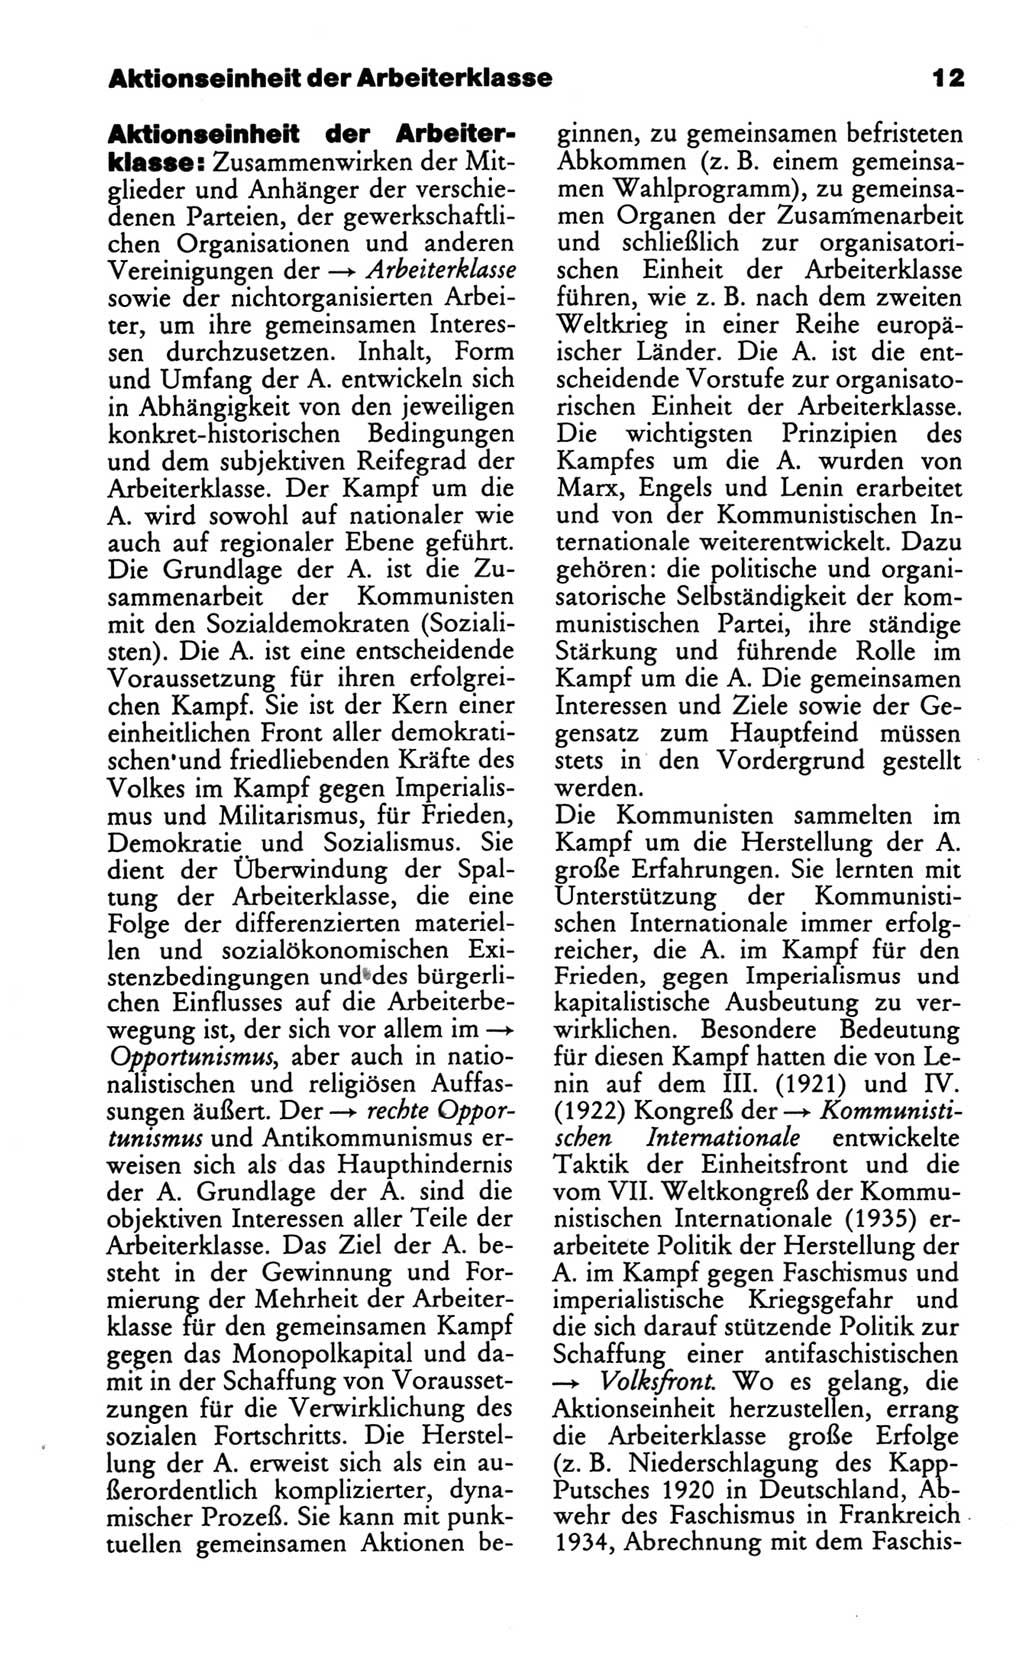 Wörterbuch des wissenschaftlichen Kommunismus [Deutsche Demokratische Republik (DDR)] 1986, Seite 12 (Wb. wiss. Komm. DDR 1986, S. 12)